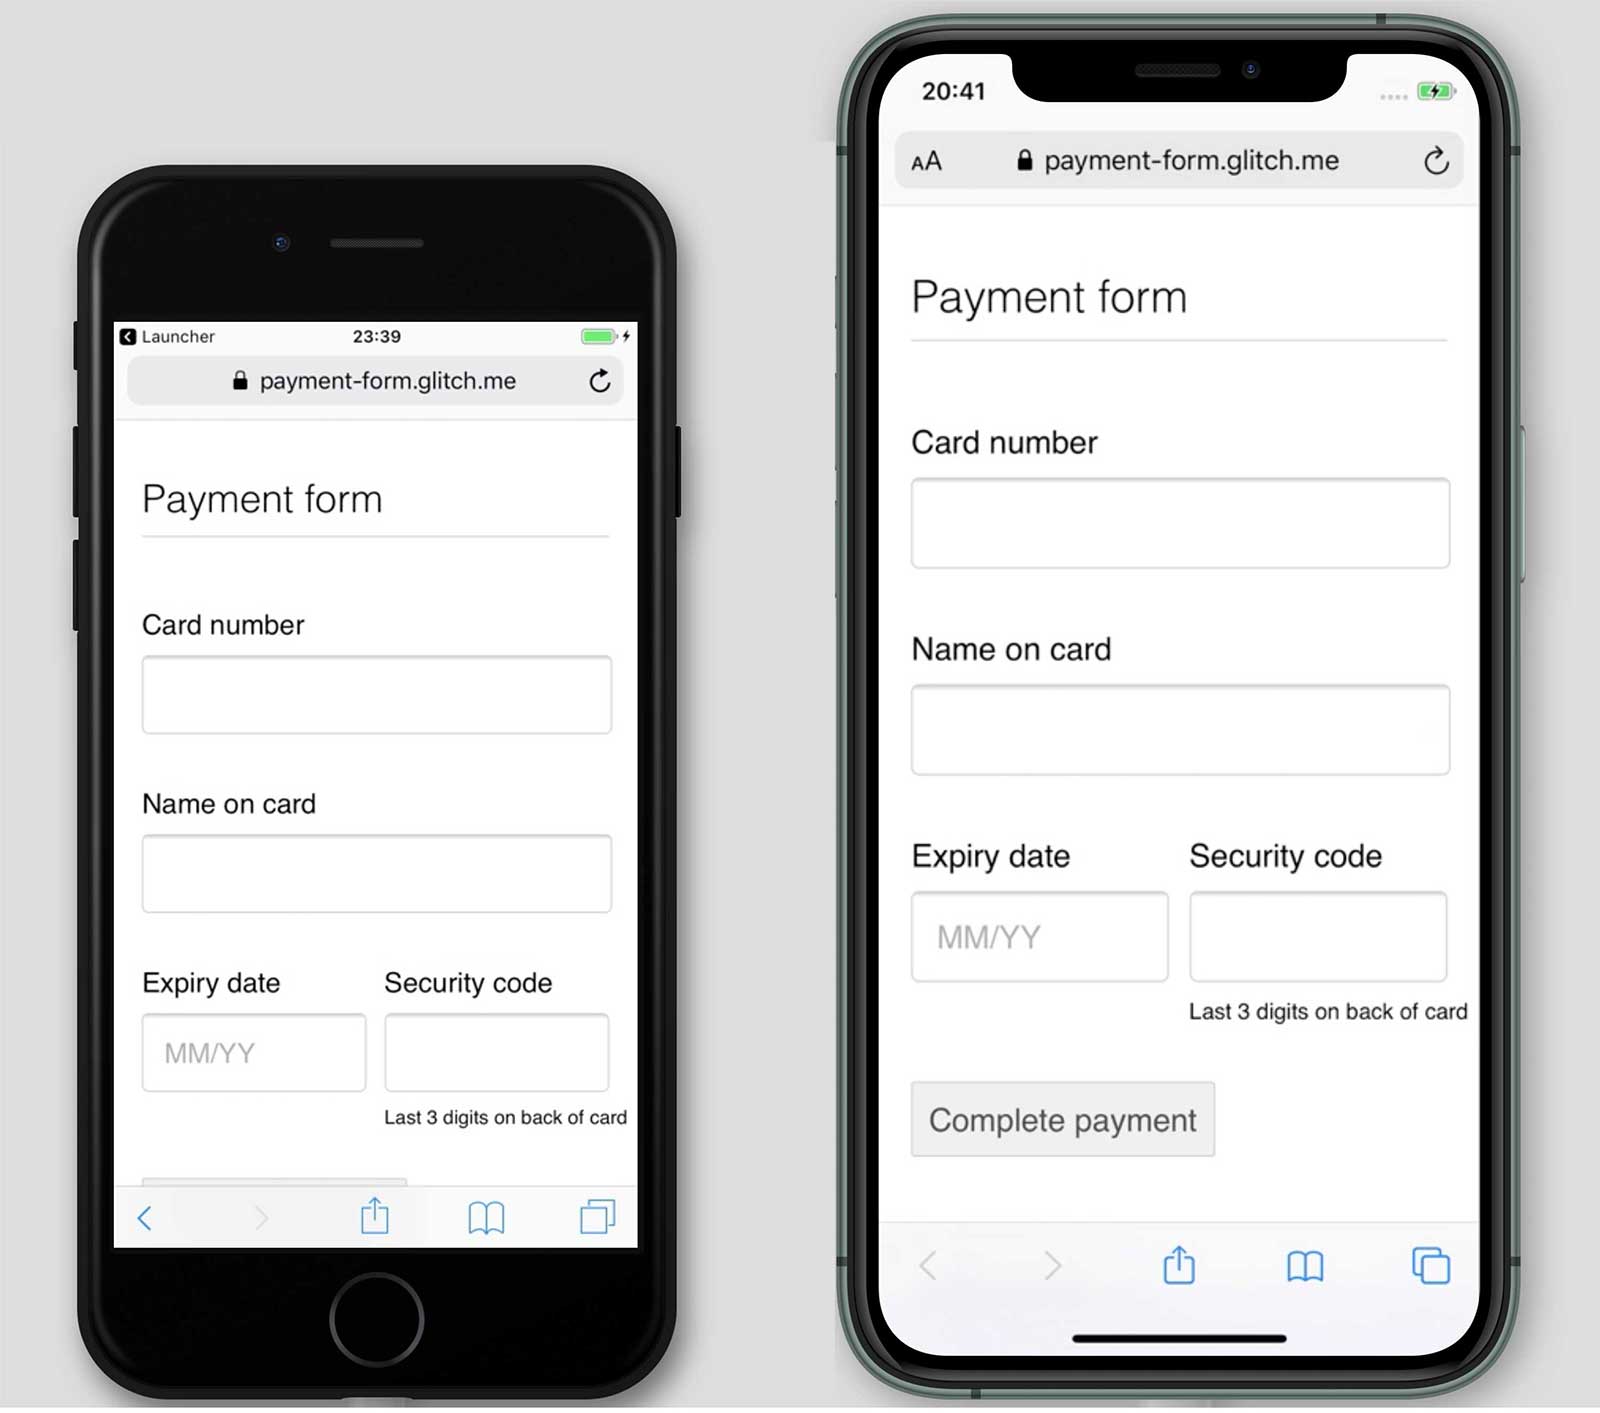 Screenshot formulir pembayaran, payment-form.glitch.me, di iPhone 7 dan 11. Tombol Selesaikan Pembayaran ditampilkan di iPhone 11, tetapi tidak 7